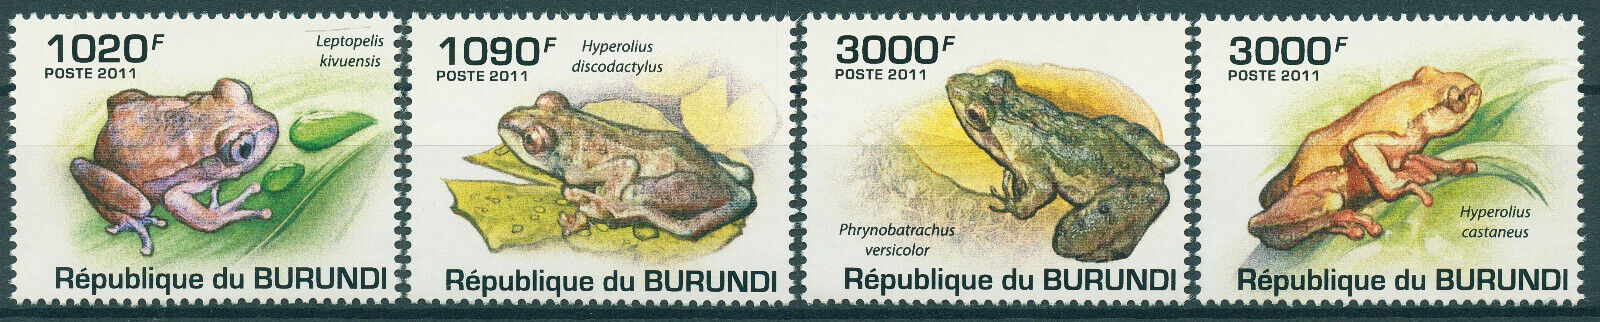 Burundi 2011 MNH Amphibians Stamps Frogs Highland Reed Frog 4v Set